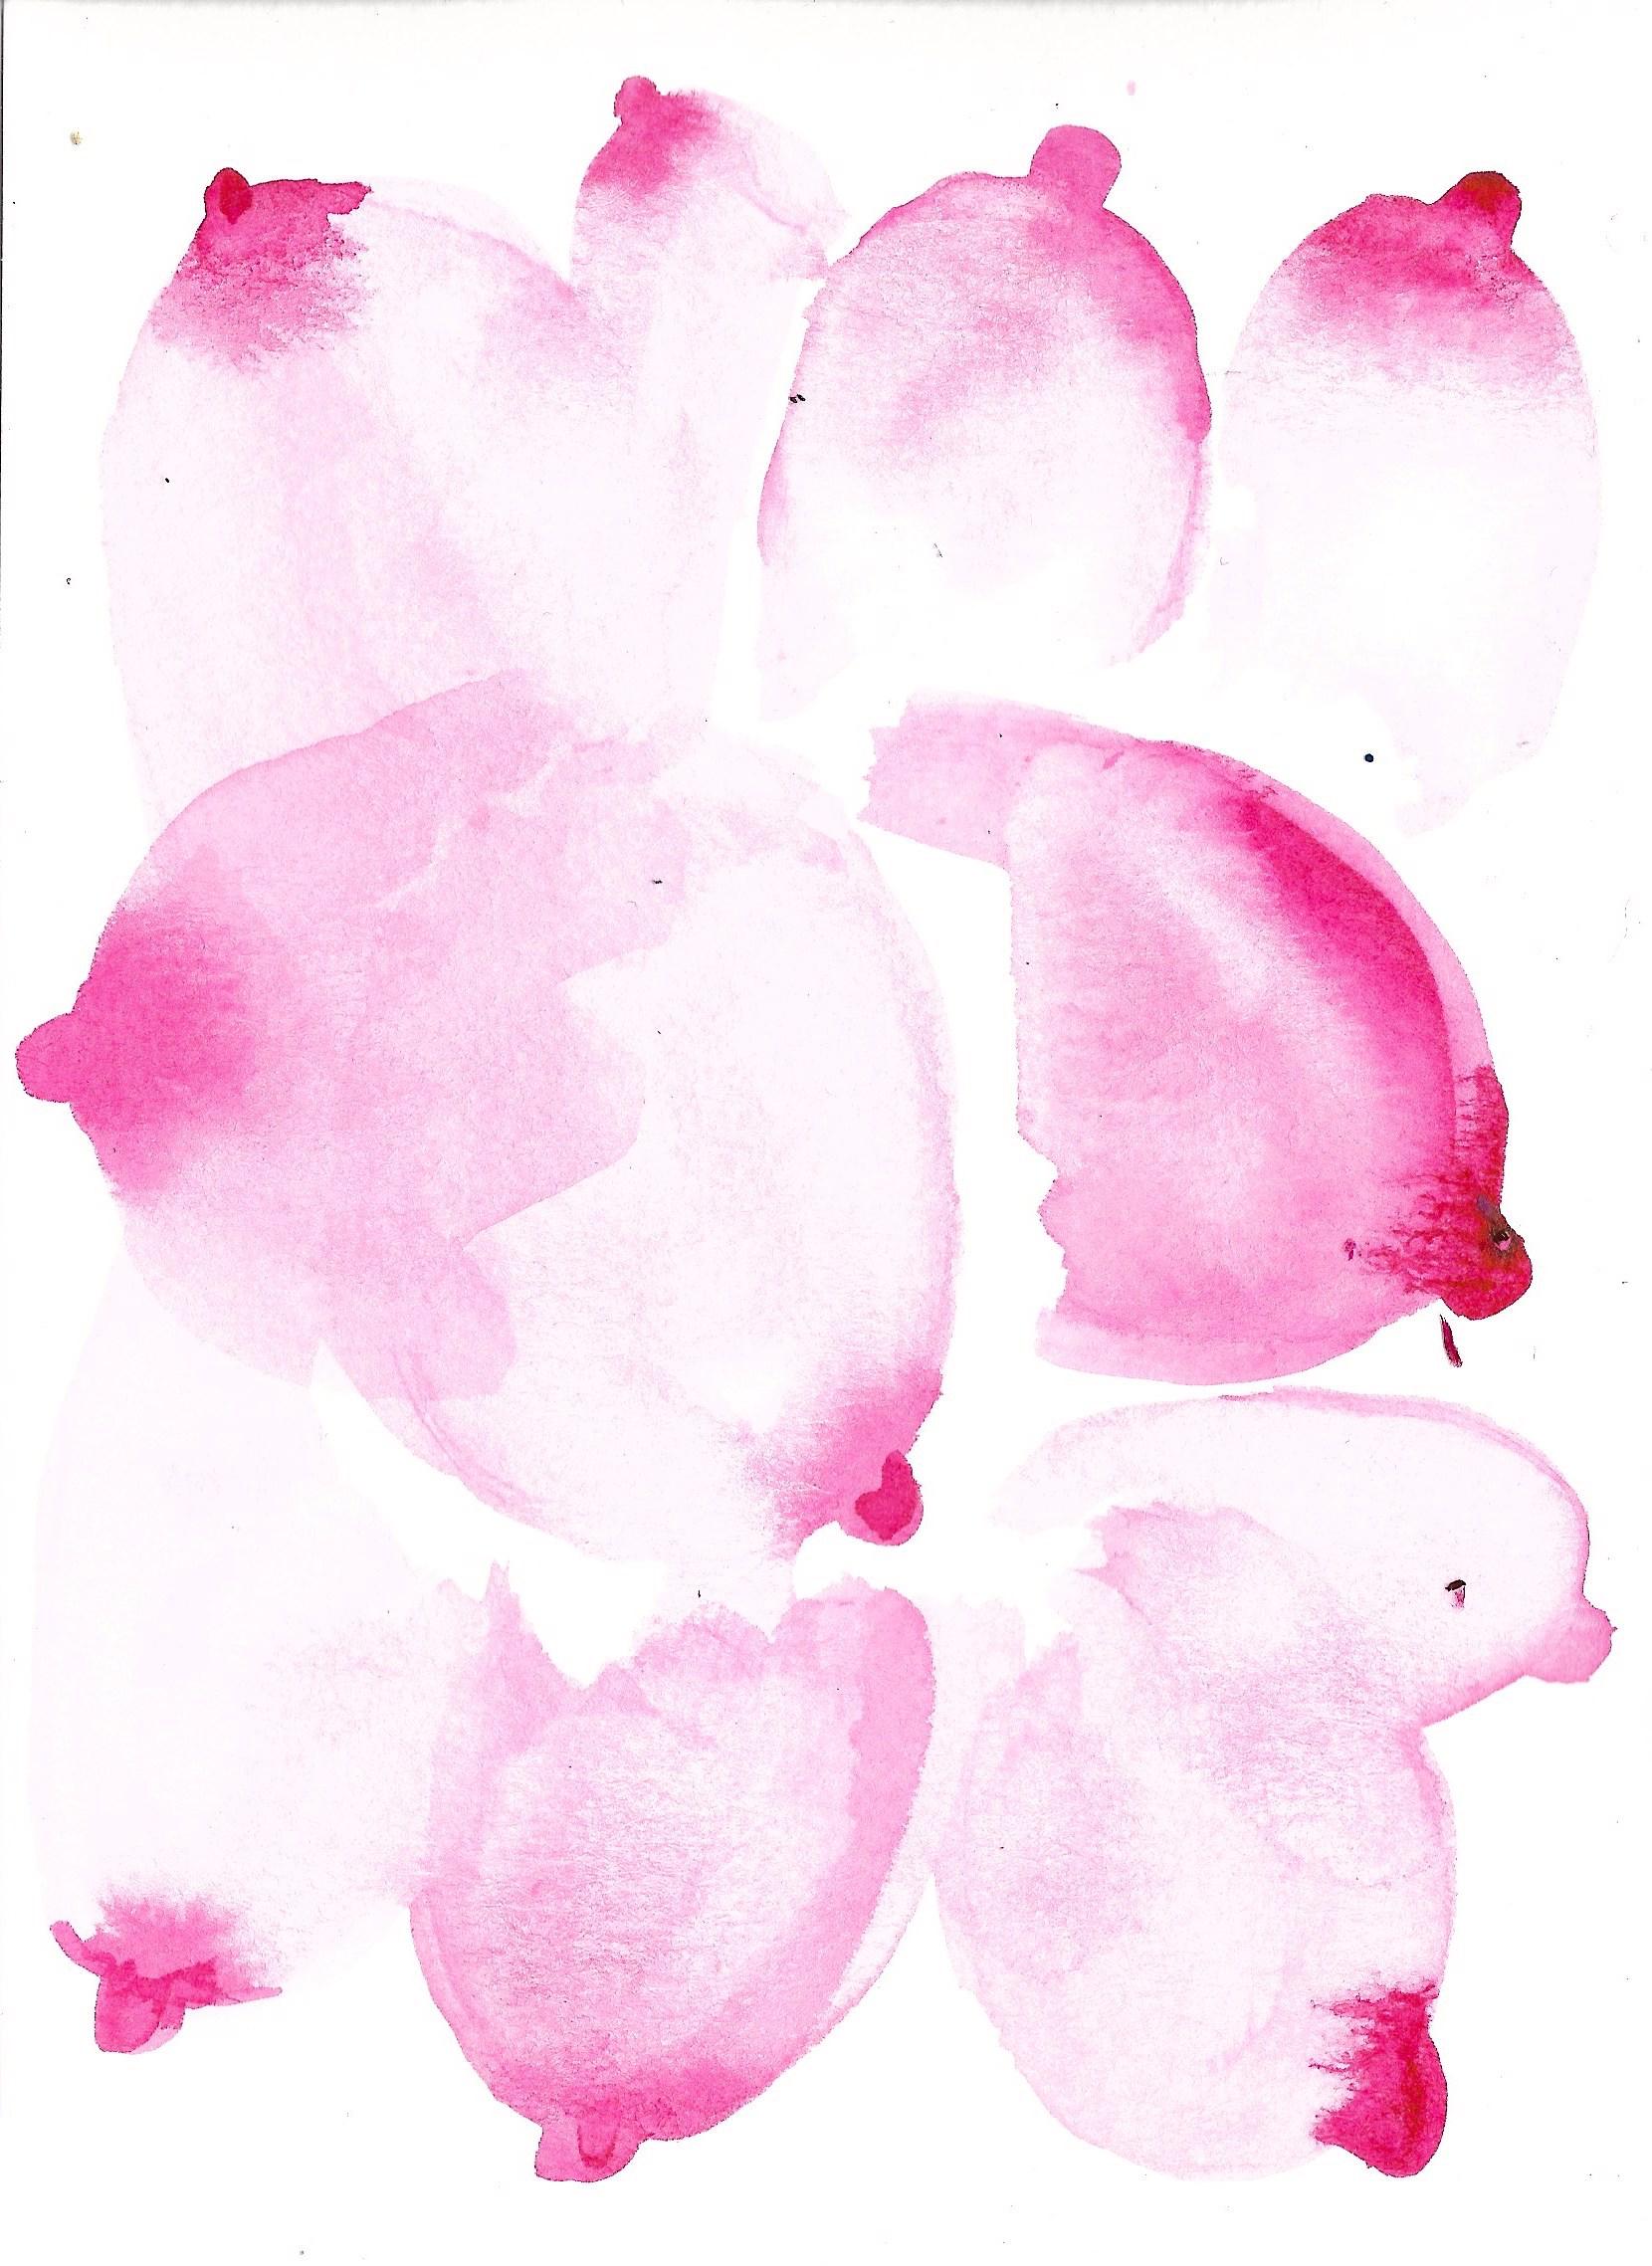 Einzigartiges Aquarell-Gemälde mit rosa Ösen